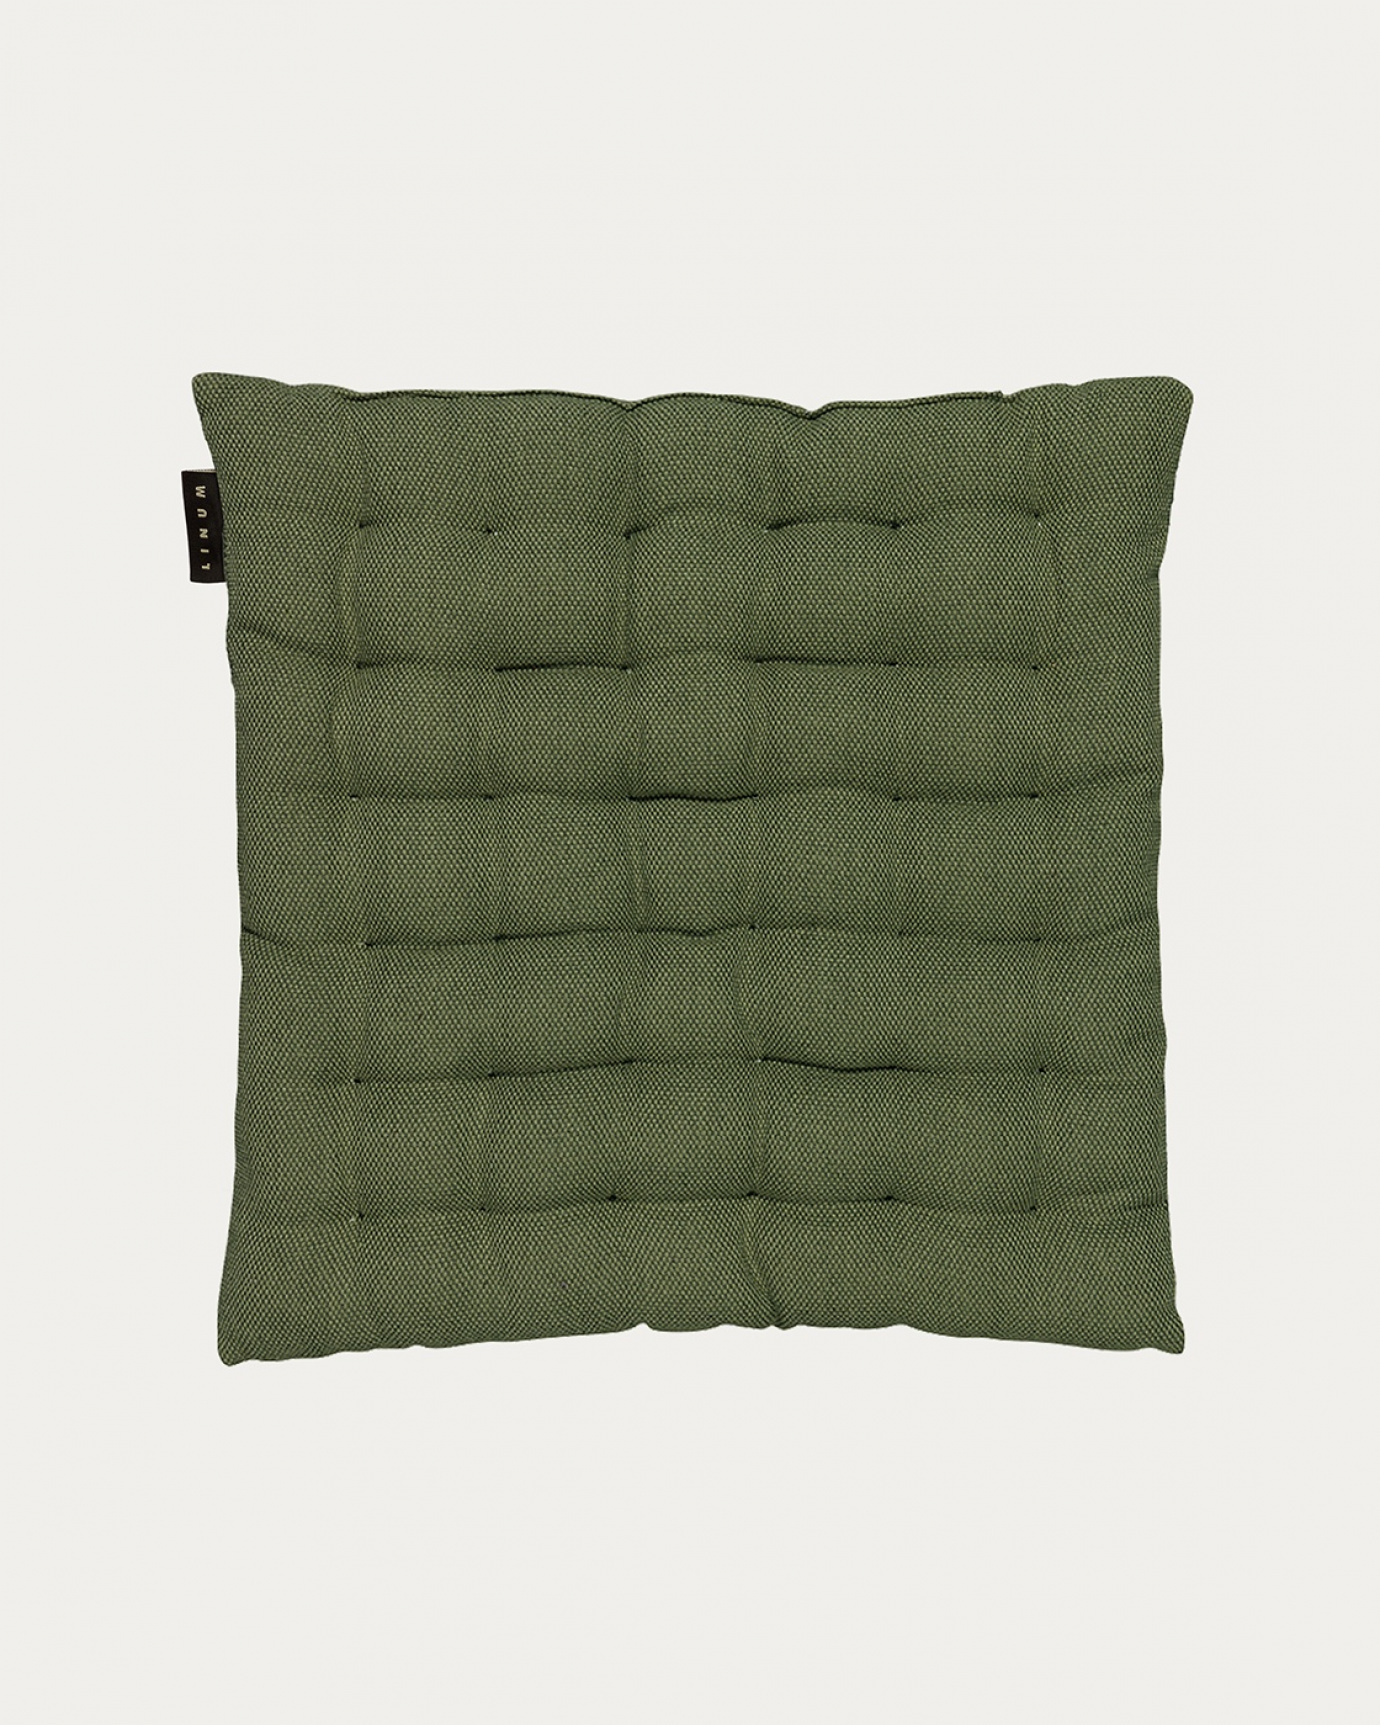 Produktbild dunkles olivgrün PEPPER Sitzkissen aus weicher Baumwolle mit Füllung aus recyceltem Polyester von LINUM DESIGN. Größe 40x40 cm.